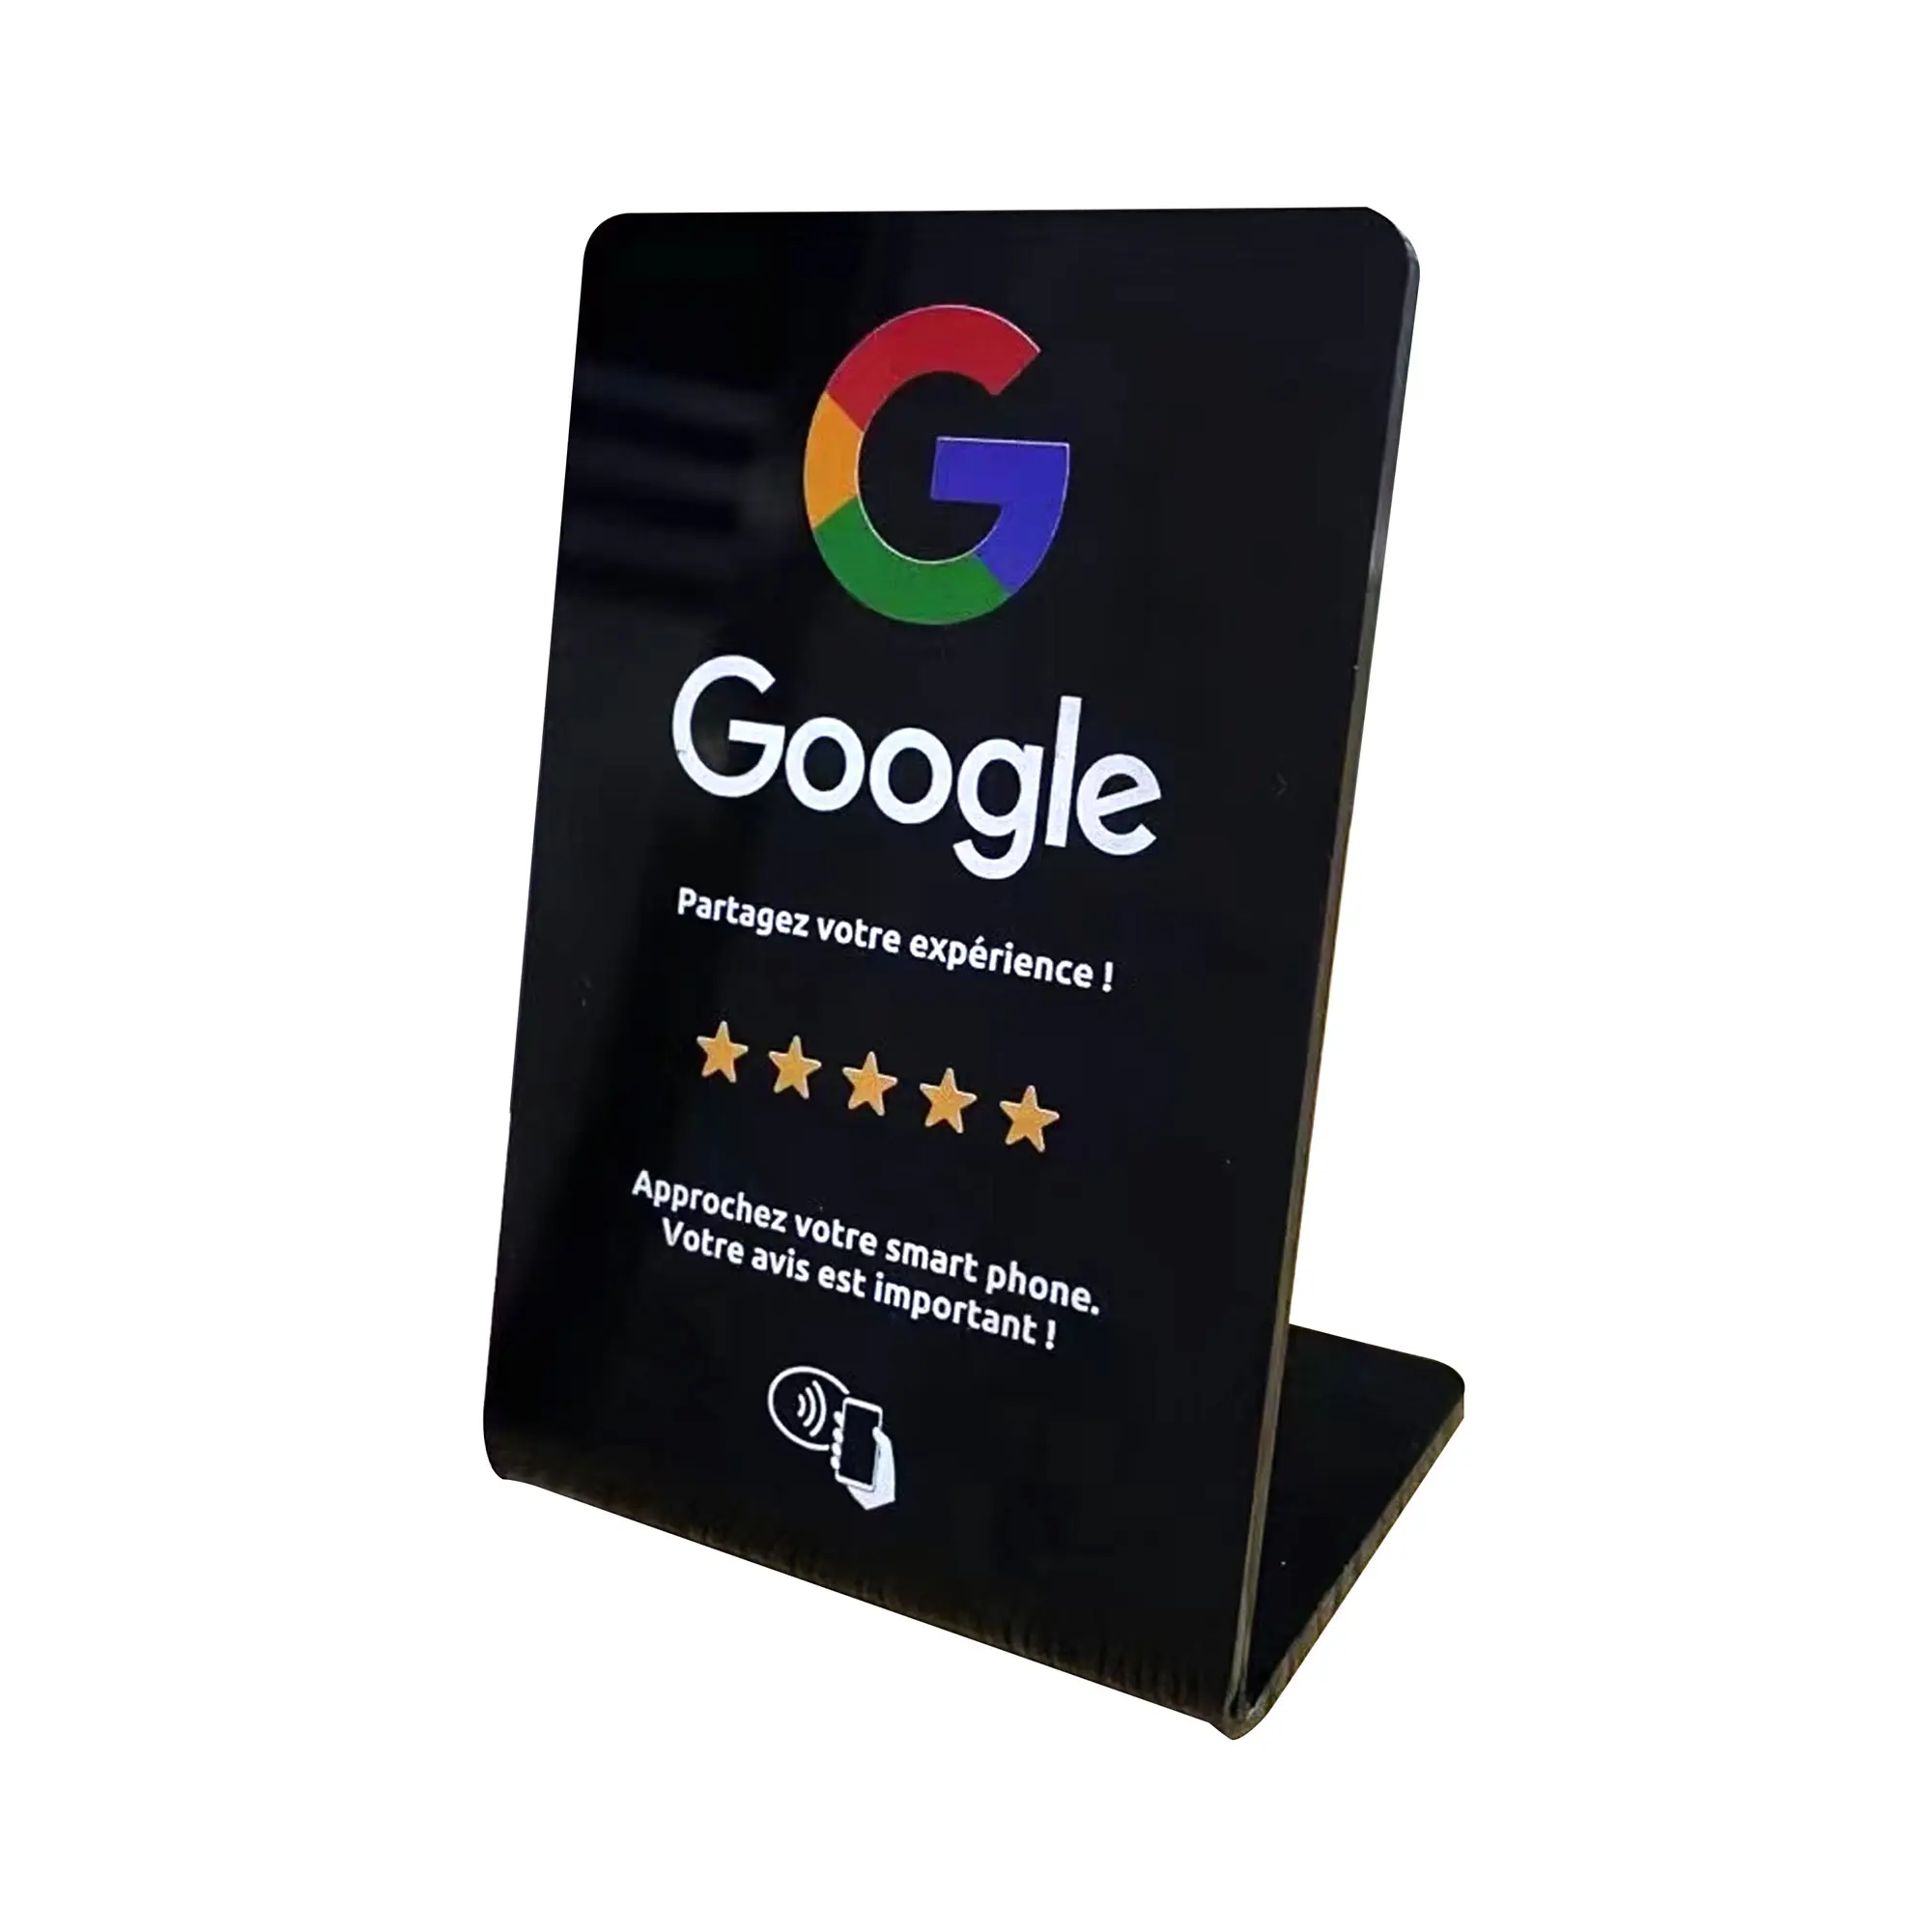 QR 코드 비접촉식 213 215 탭 아크릴 디스플레이 스탠드 카드와 사용자 정의 구글 검토 NFC 스탠드 카드